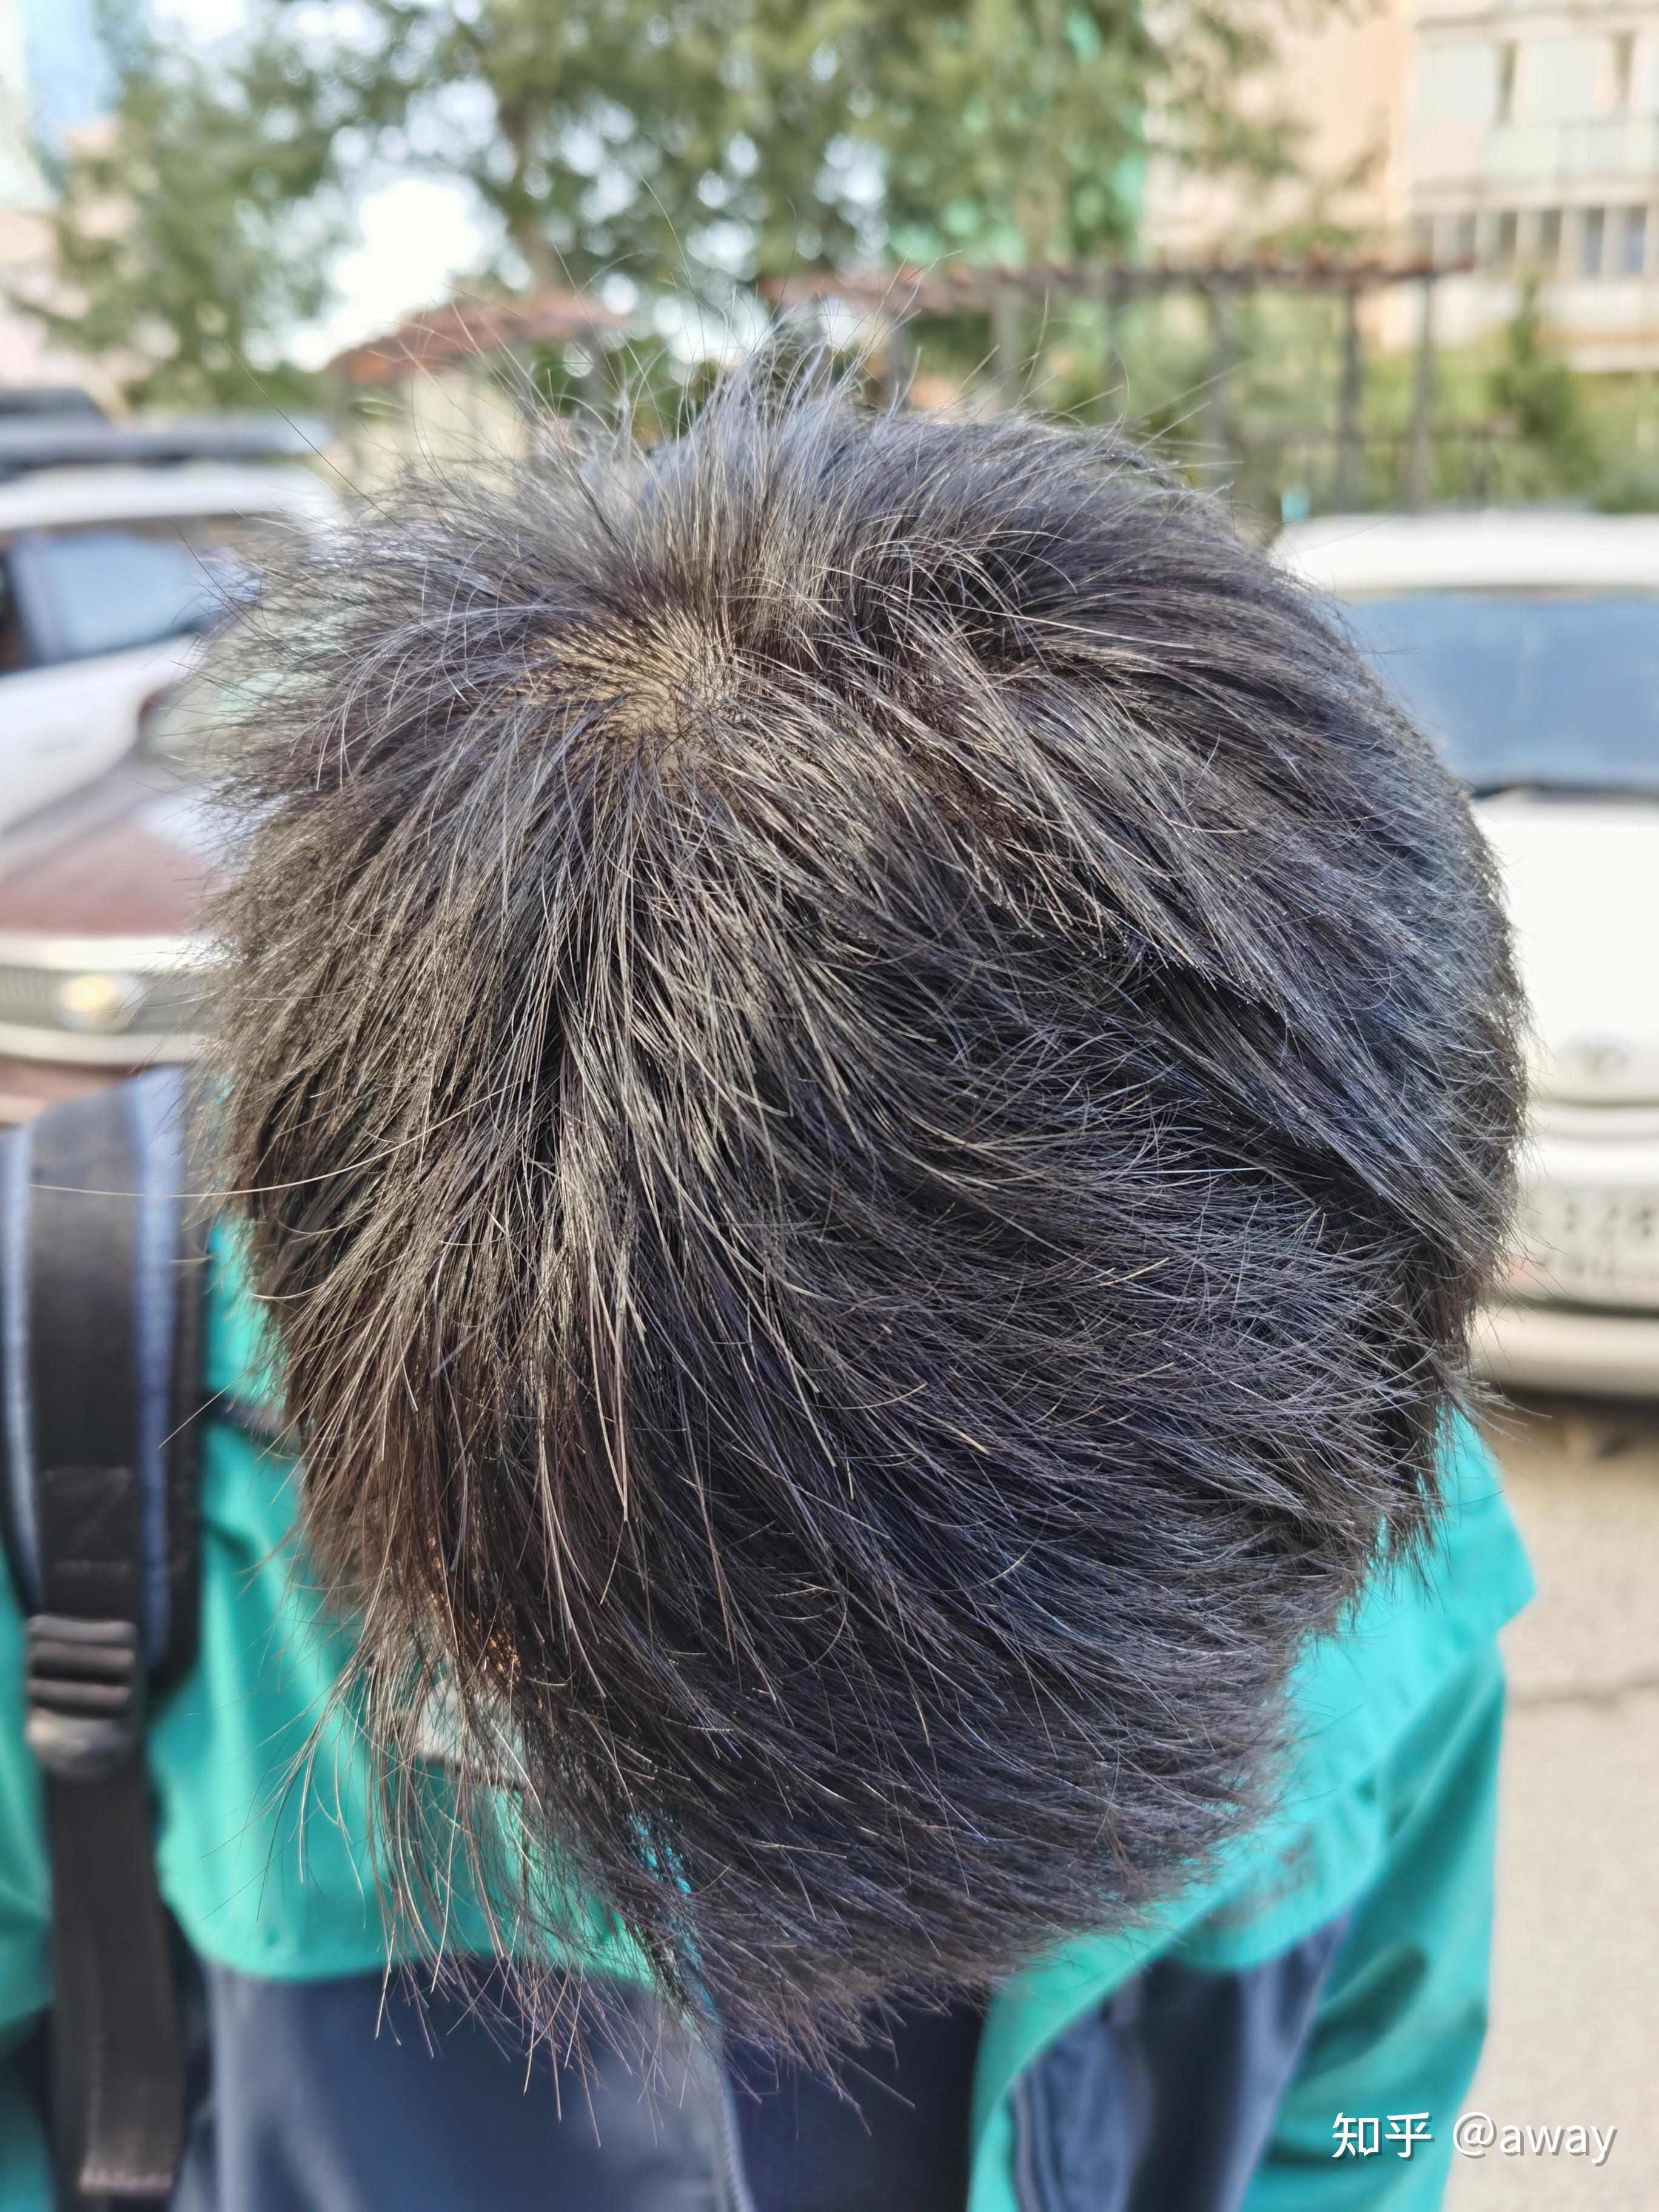 半年后的效果,头顶头发已恢复正常发量,并且发质黑且浓密